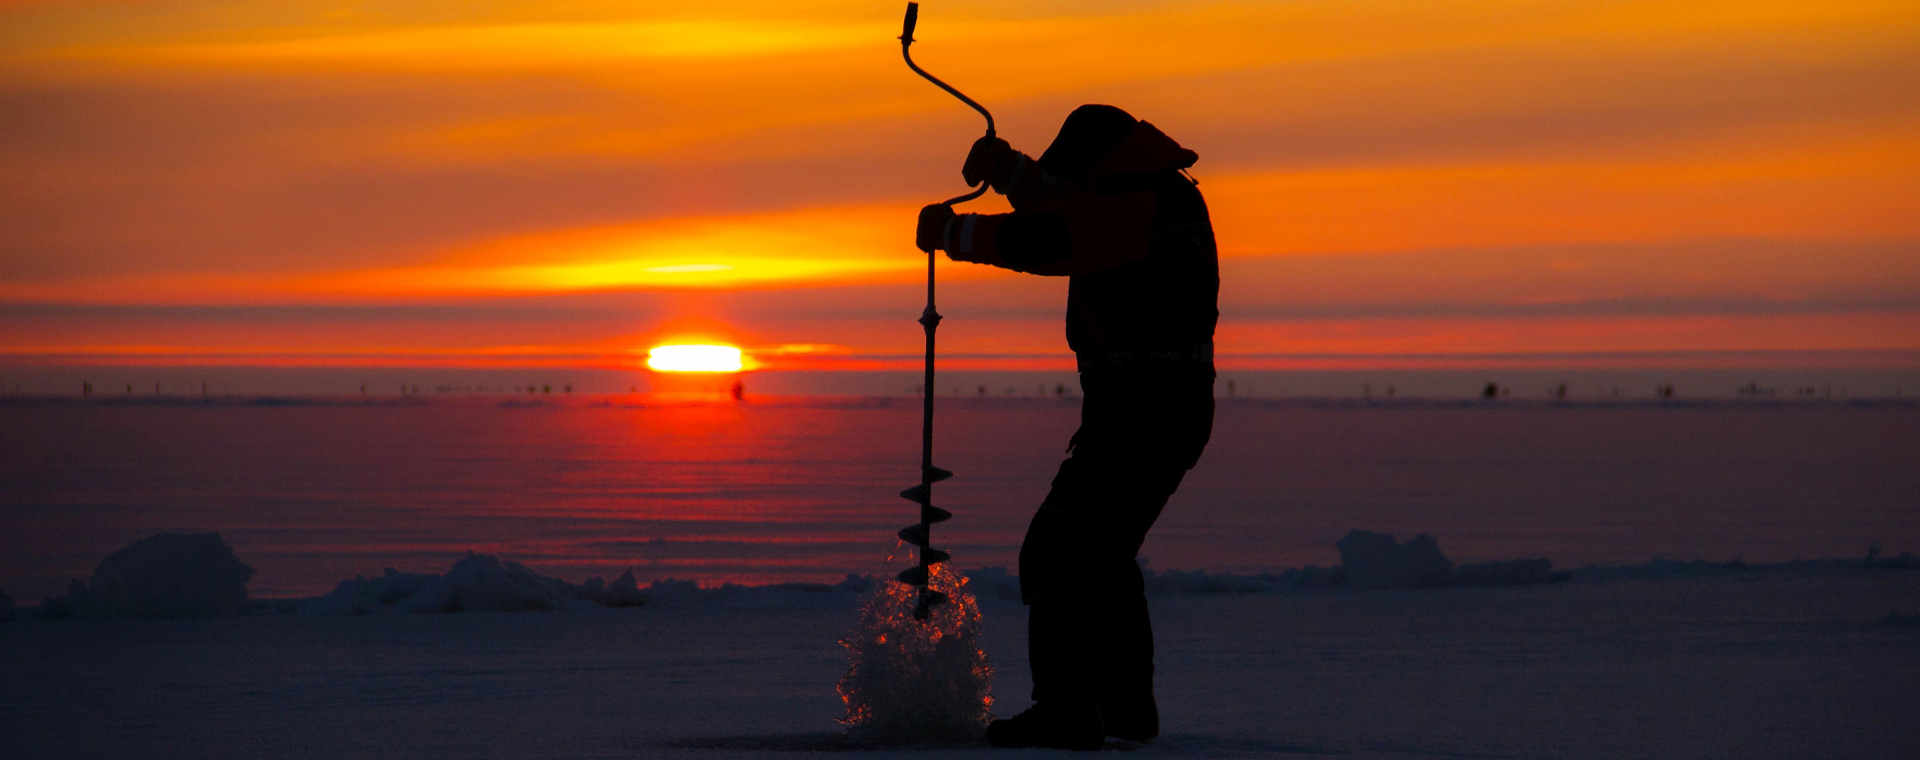 Ice-fishing in Estonia